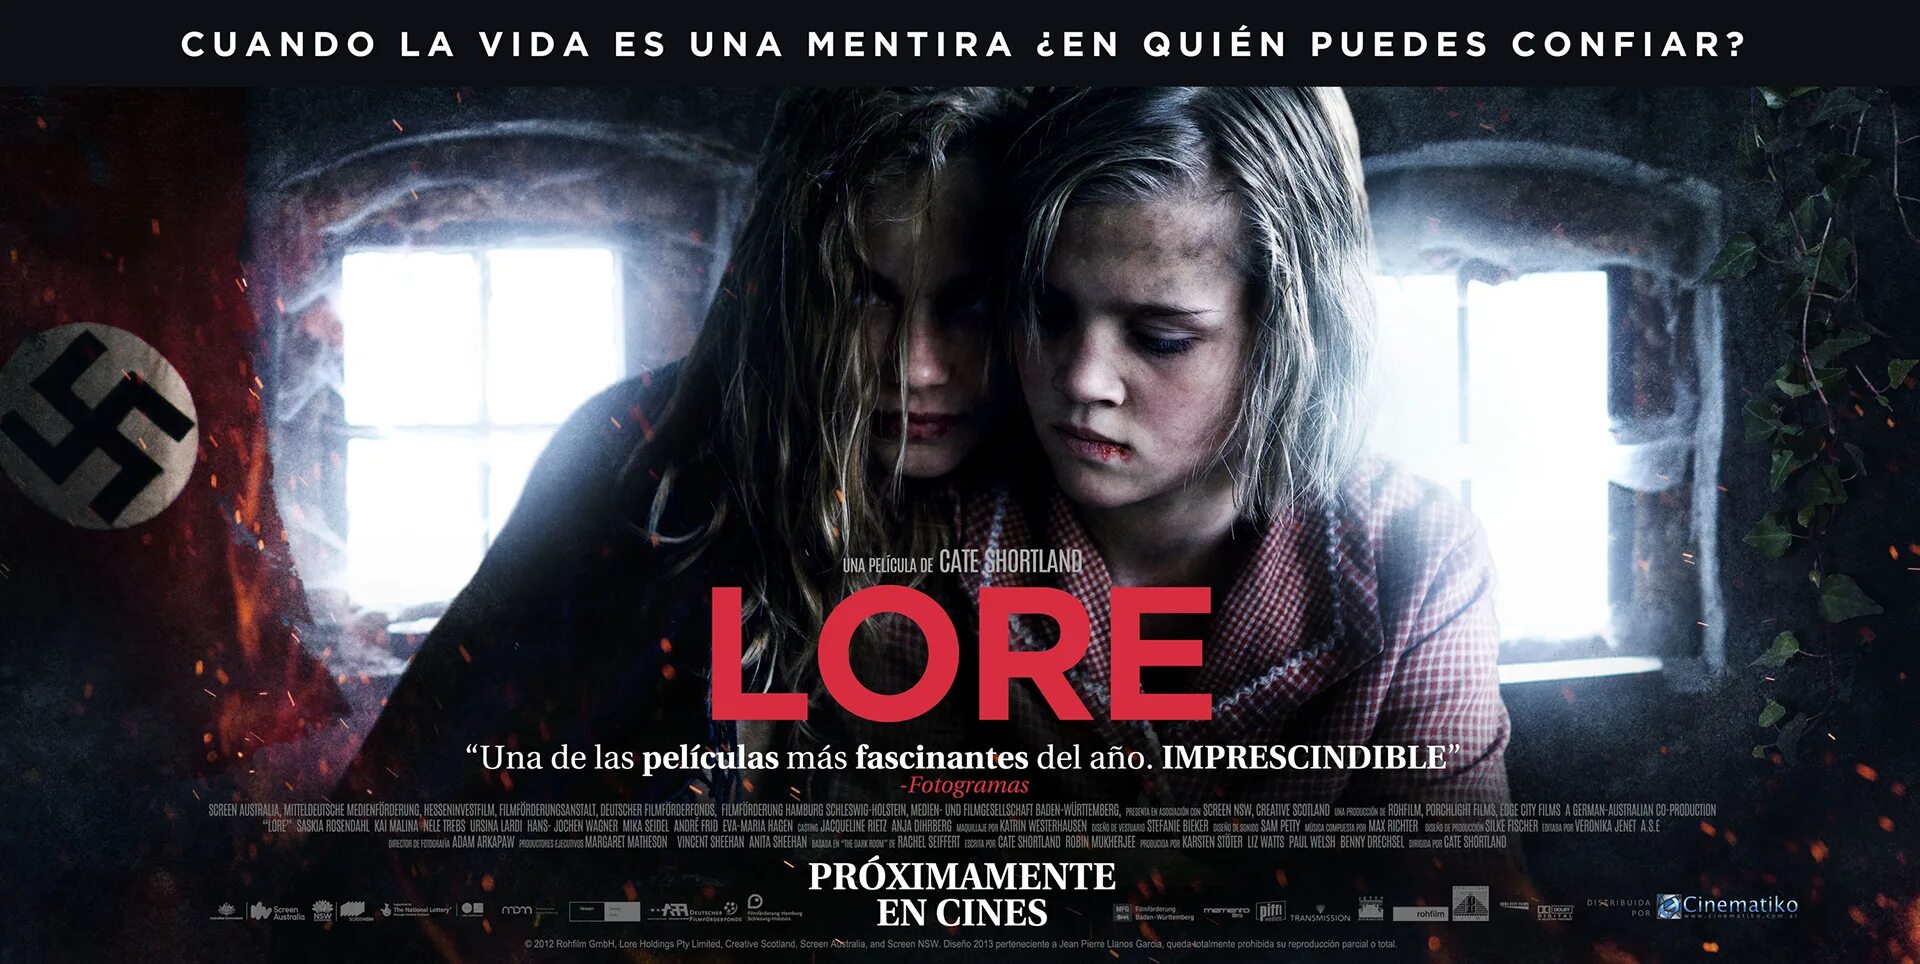 Лоре / Lore (2012. Lore 5